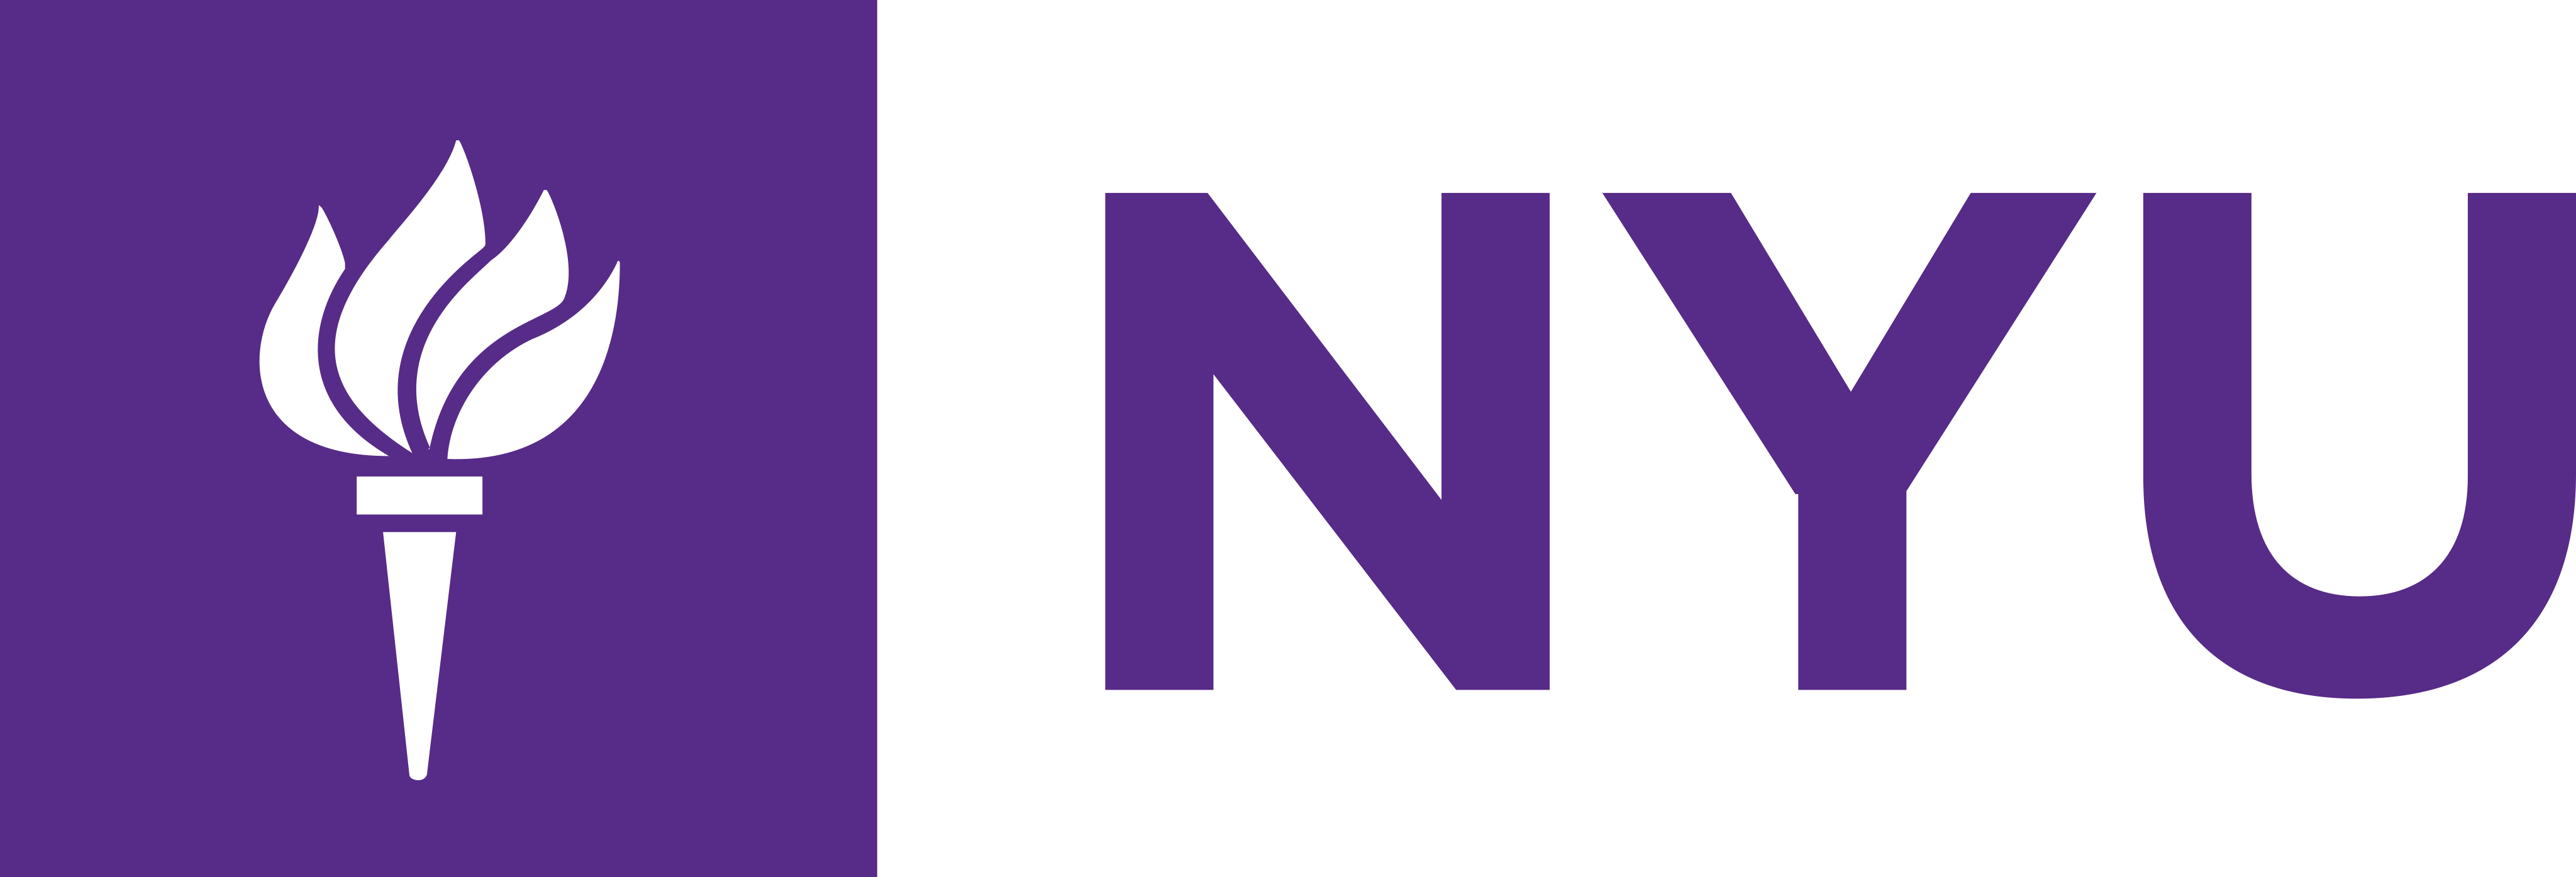 Λογότυπο NYU – Λογότυπο Πανεπιστημίου Νέας Υόρκης - PNG και διάνυσμα - Λήψη λογότυπου